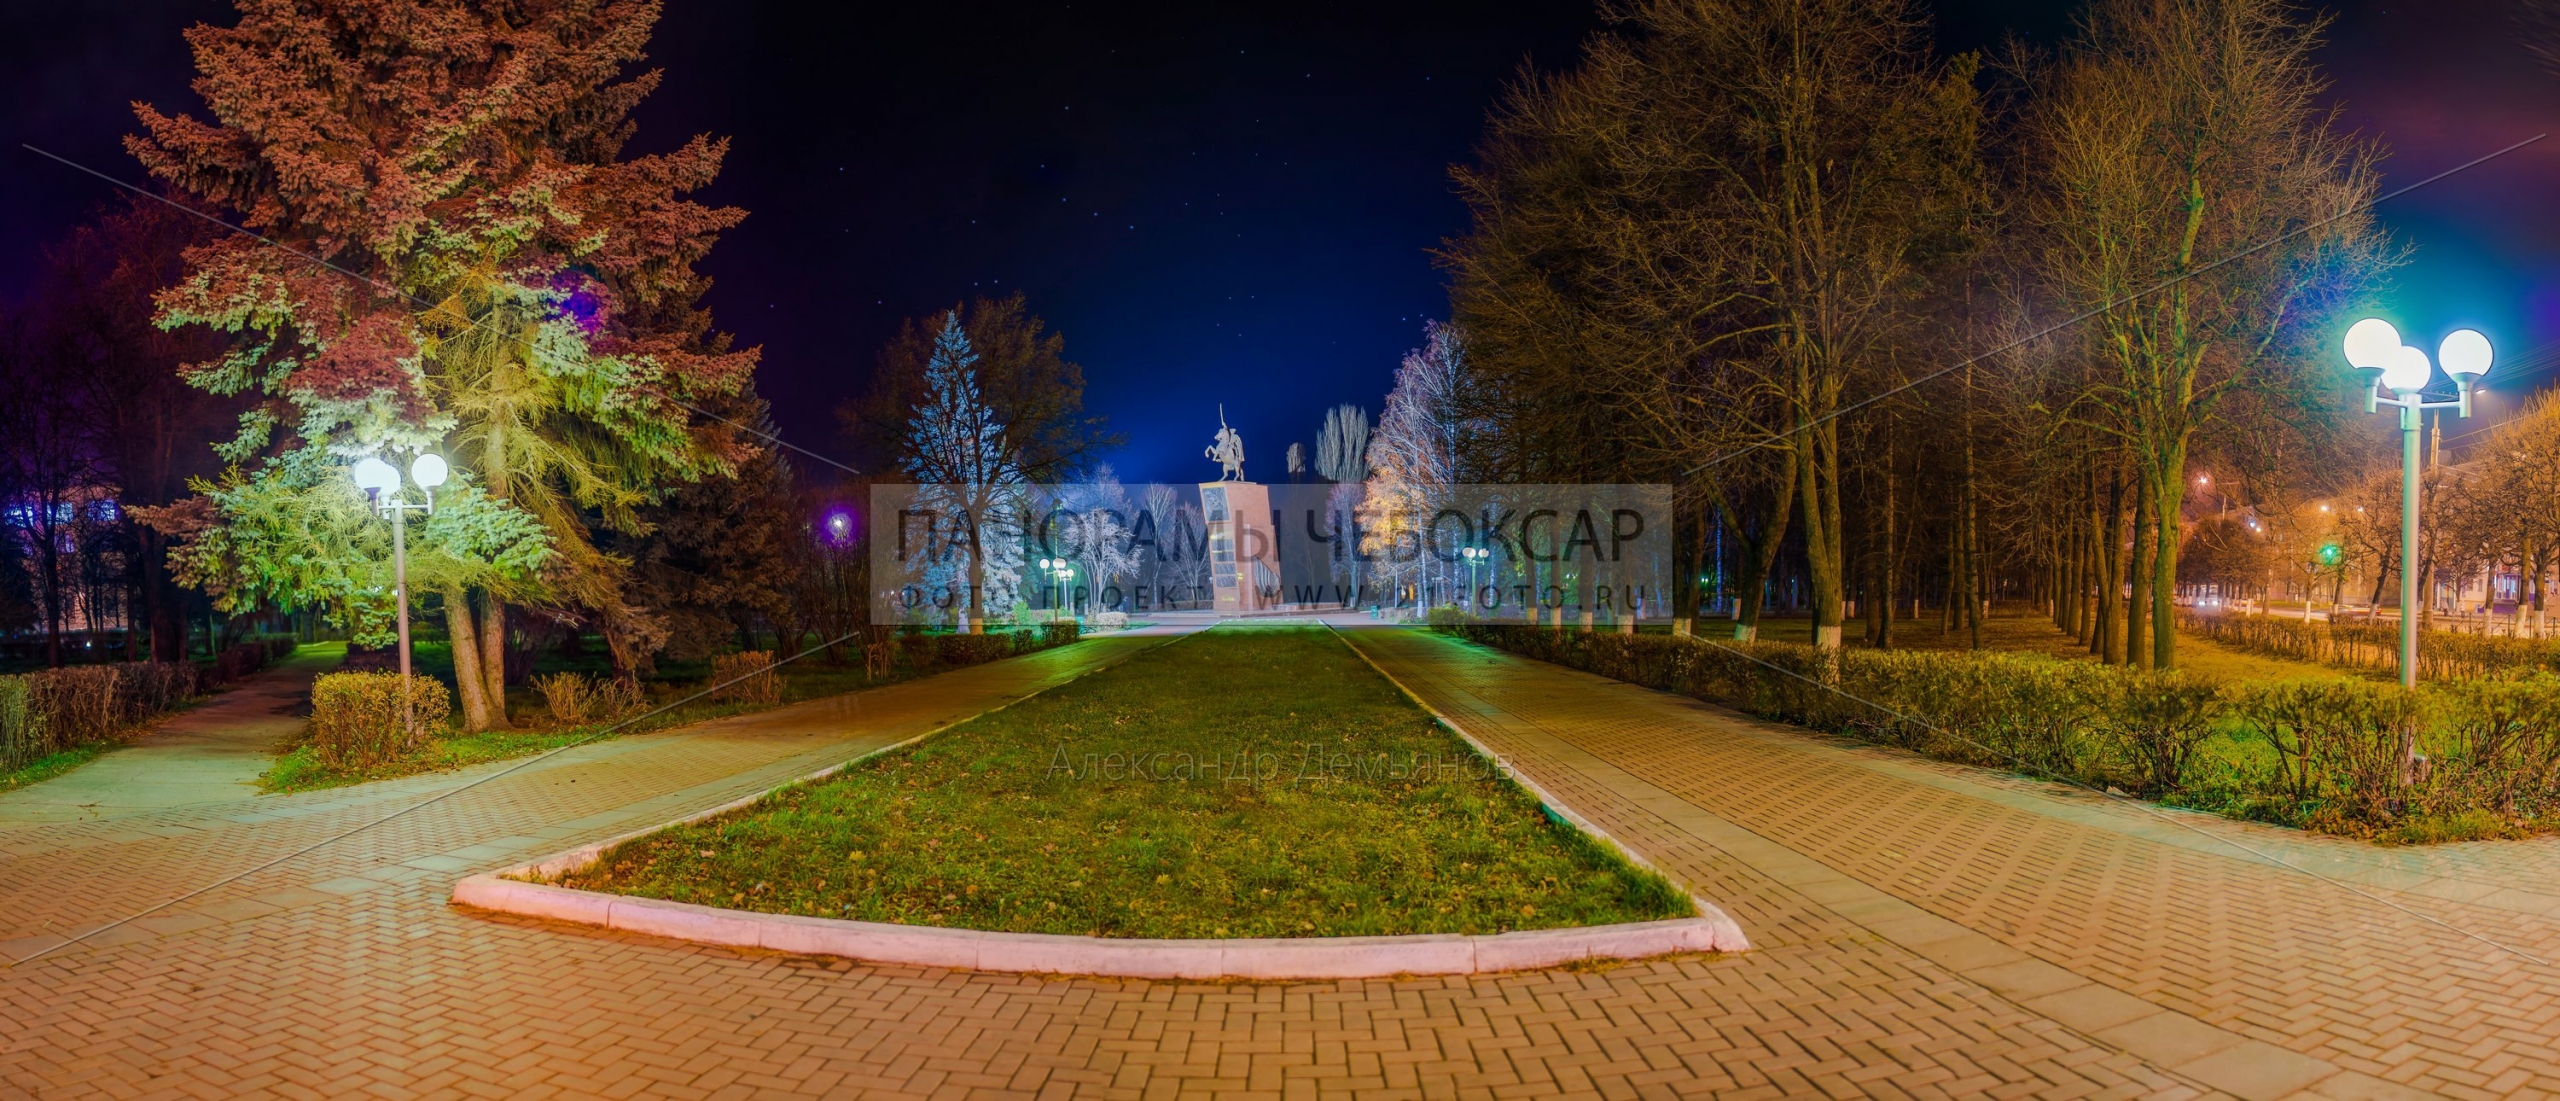 Памятник Чапаеву в Чебоксарах осенью (87 megapixels)